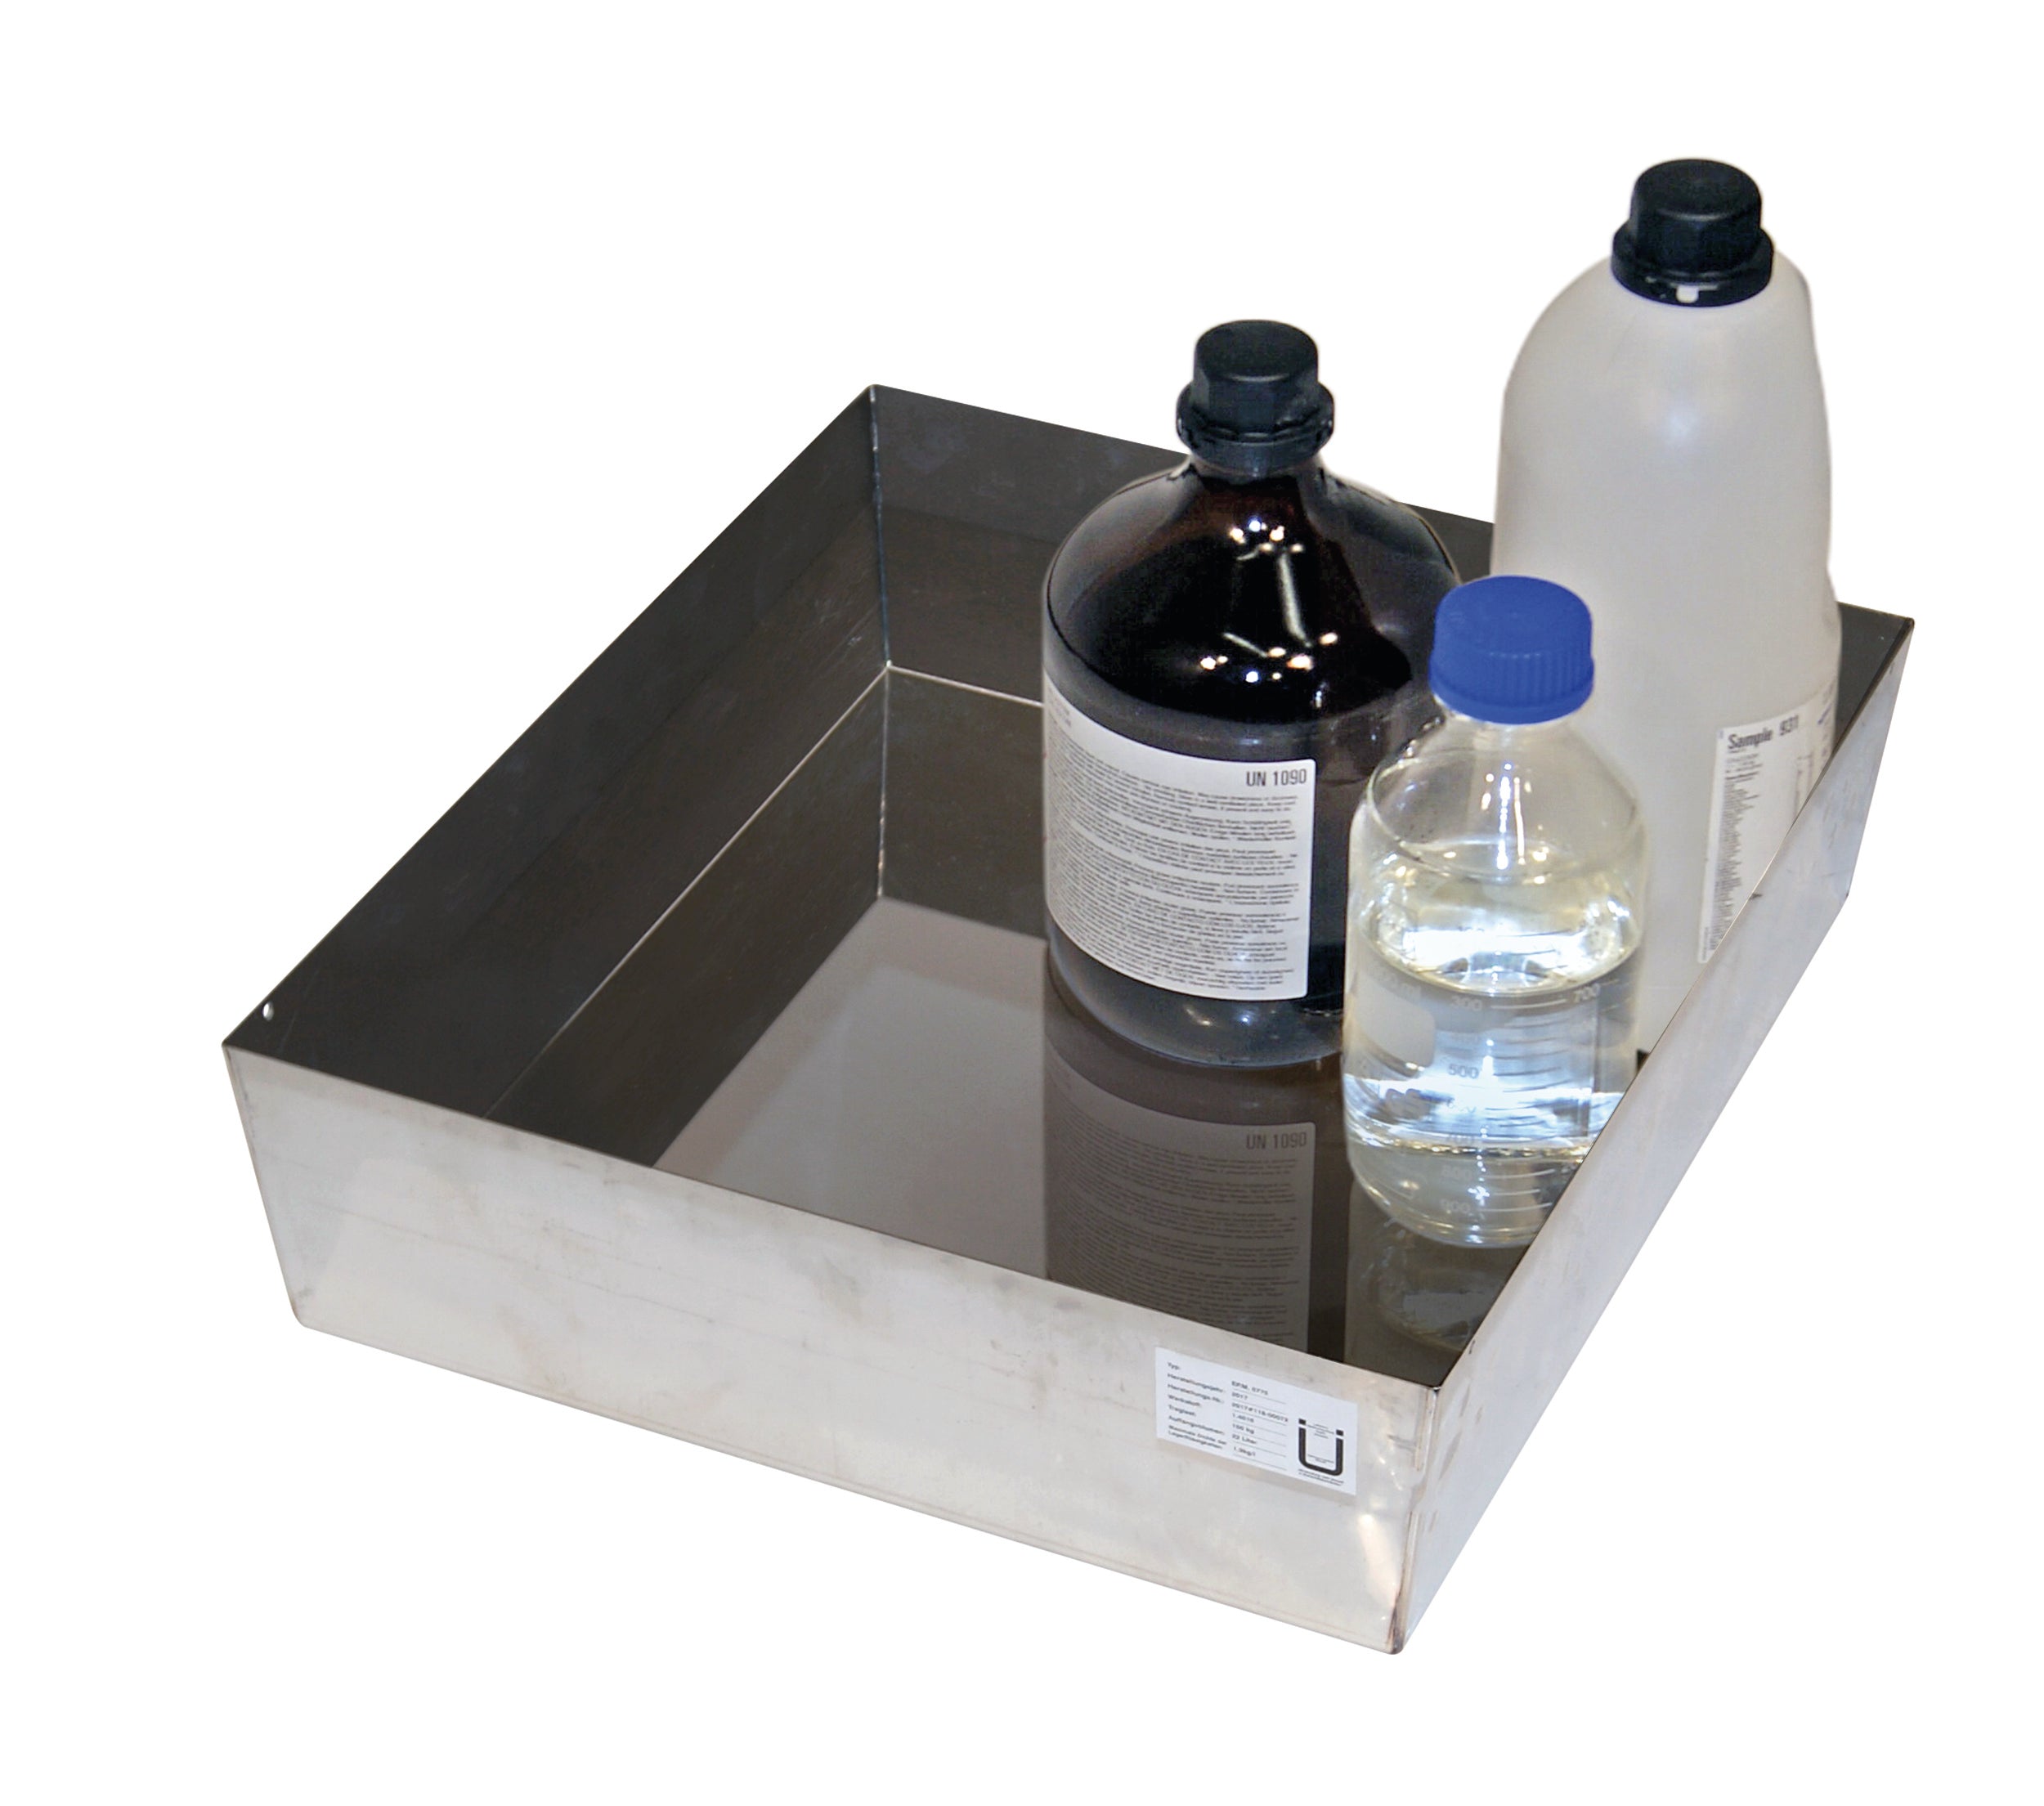 Wannenboden Standard (Volumen: 22,00 Liter) für Modell(e): Q90, S90 mit Breite 600 mm, Edelstahl 1.4301 roh